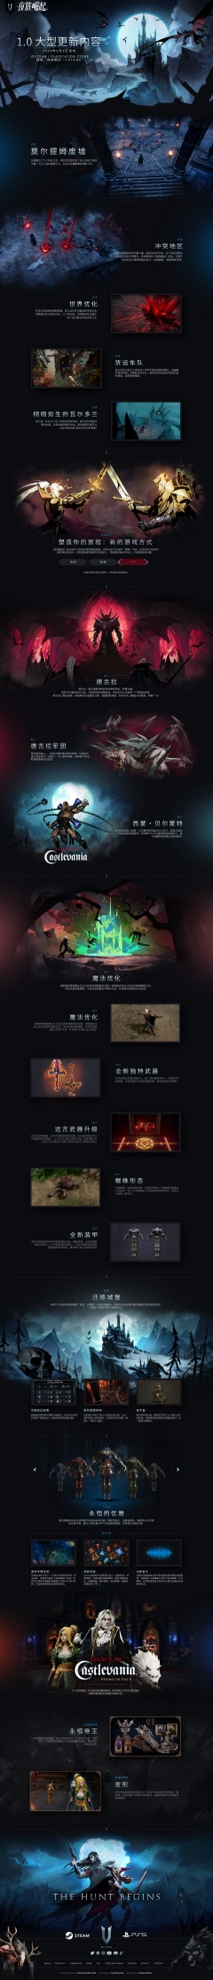 吸血鬼主题生涯游戏《夜族突起》宣告全新地域首个实机预告片：“莫尔提姆废墟”